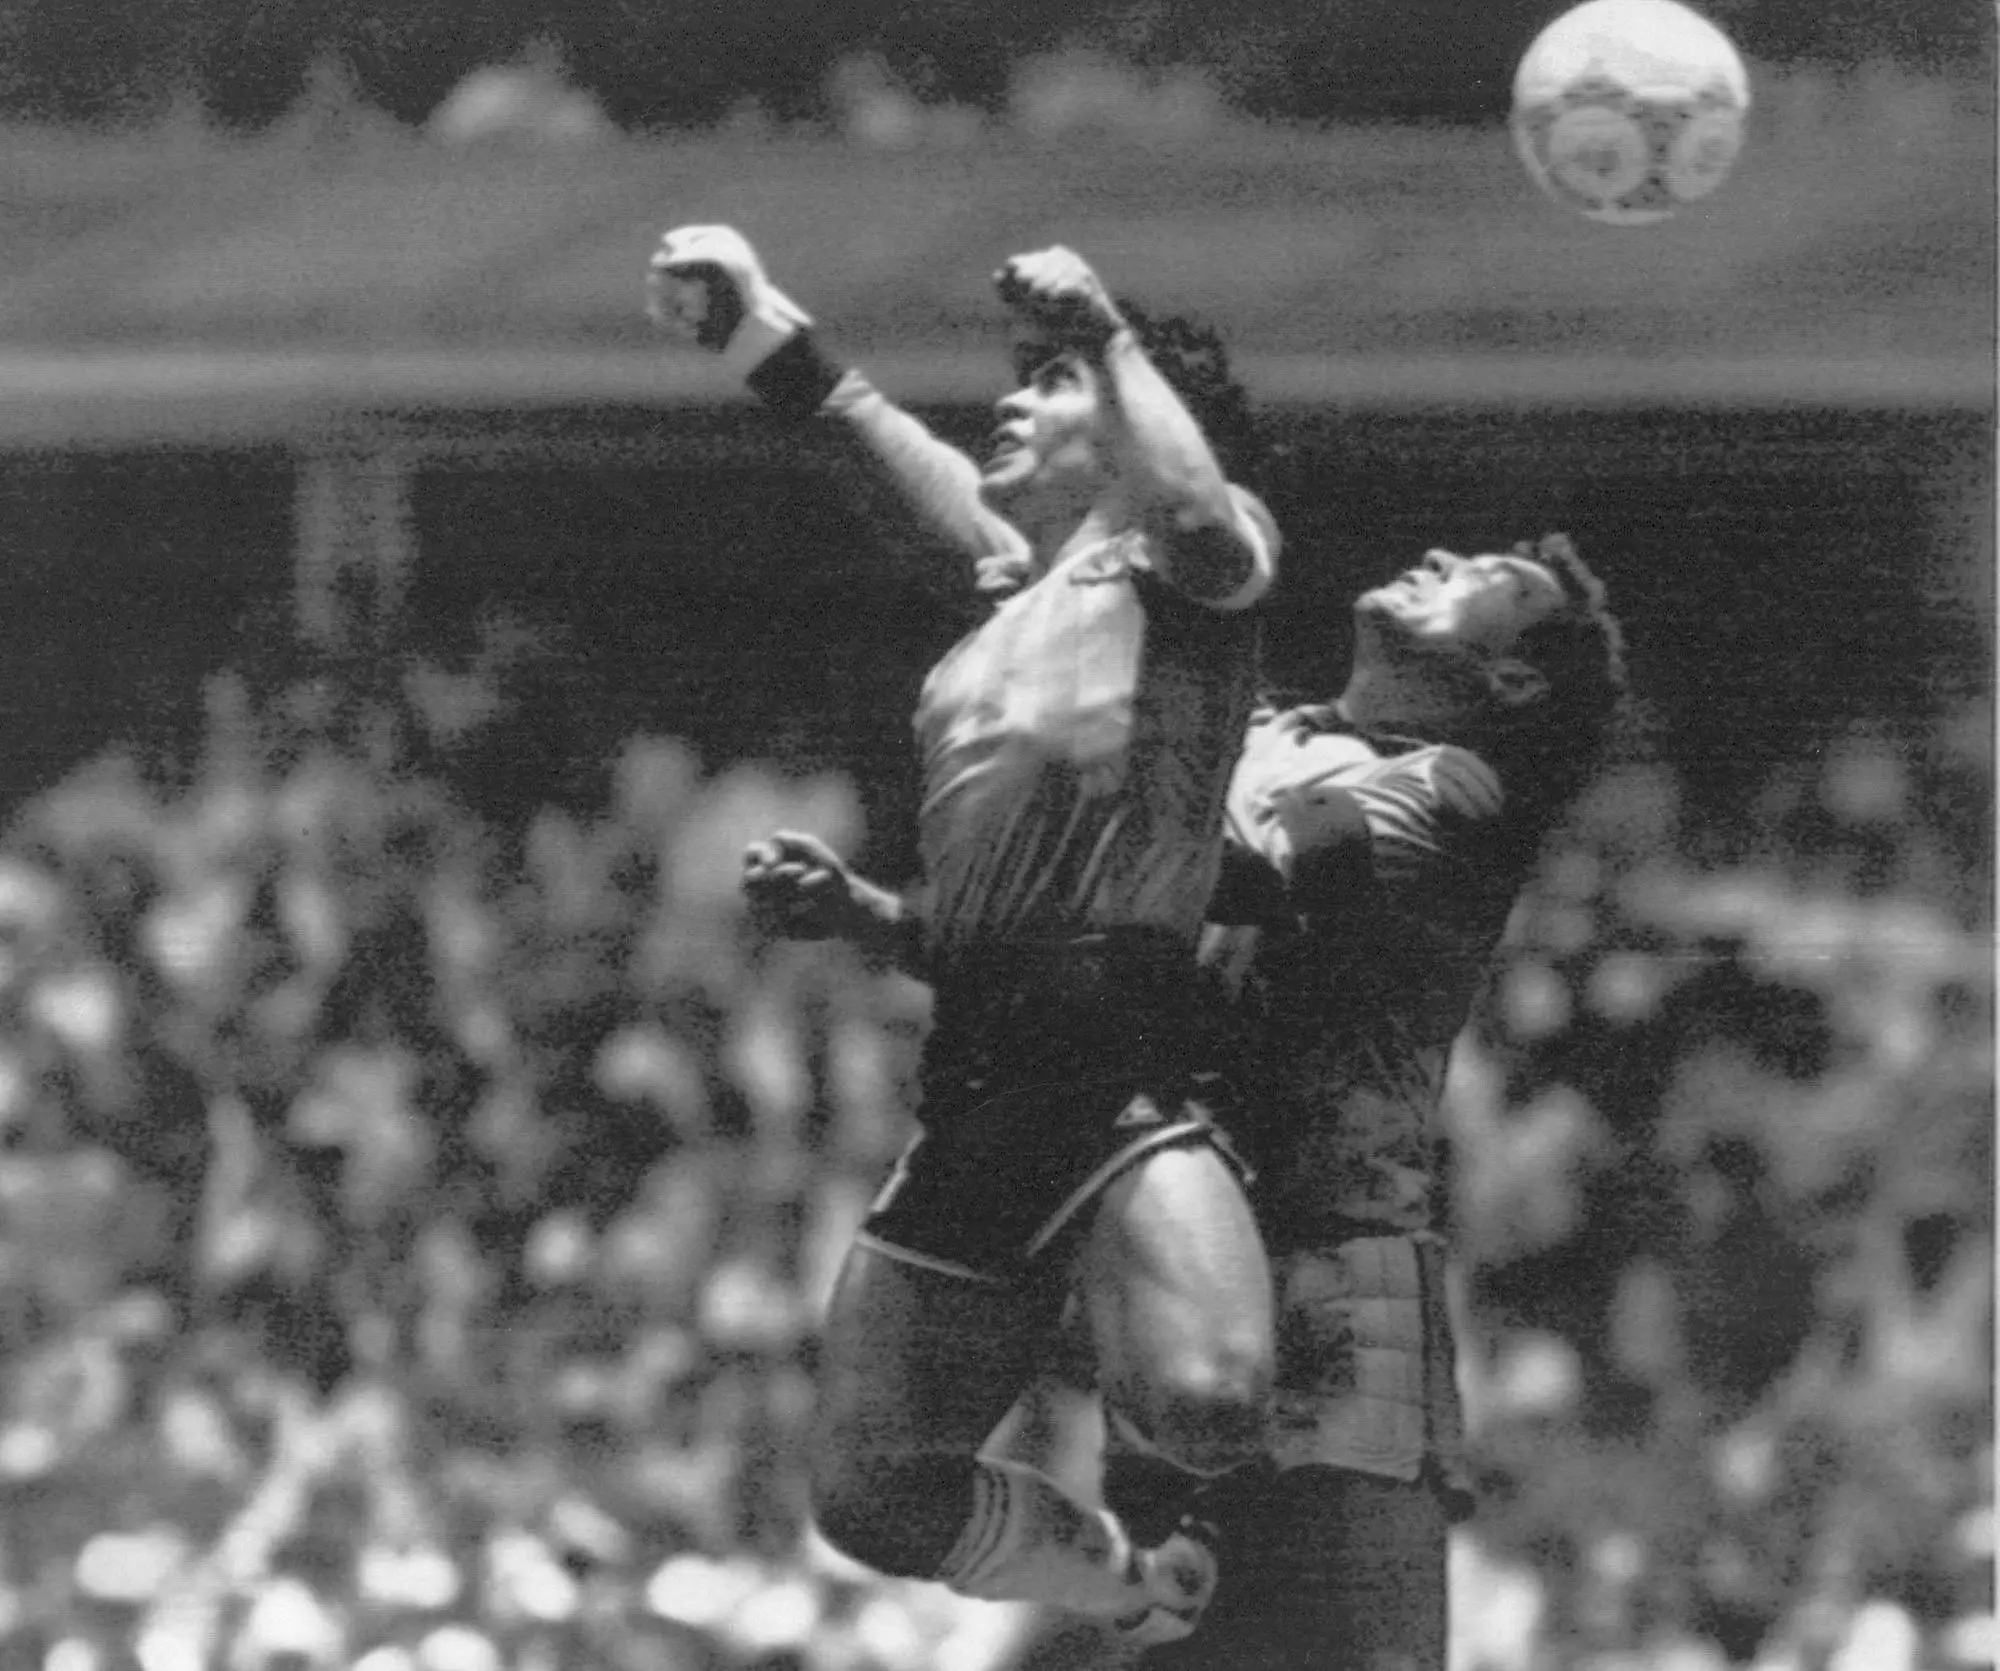 La &quot;mano di Dio&quot;, il gol segnato da Maradona contro l'Inghilterra nel Mondiale '86 in Messico (archivio)